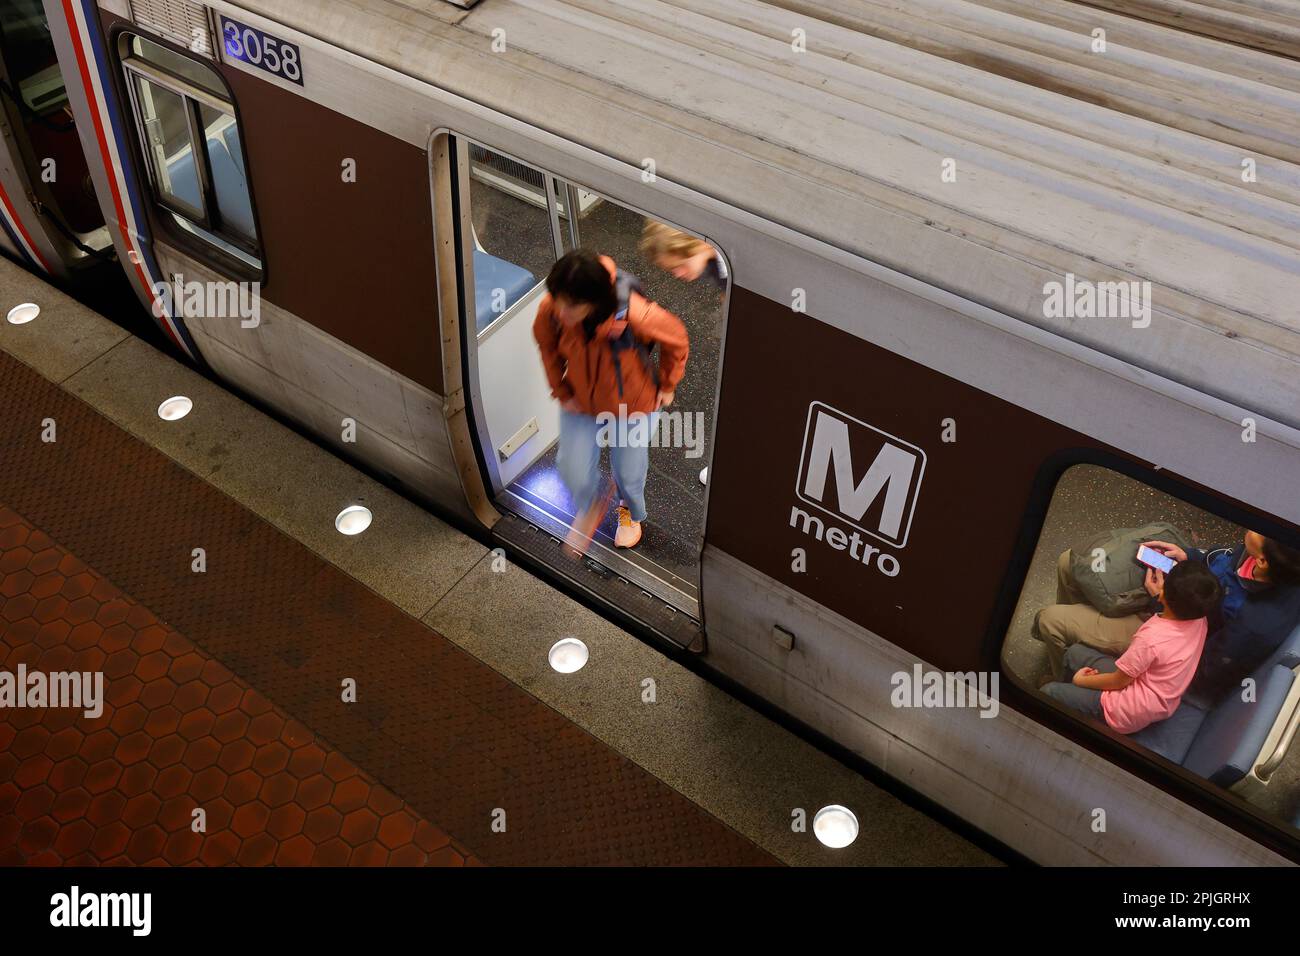 Die Leute steigen aus einem U-Bahn-Wagen der DC-U-Bahn-Serie aus dem Jahr 3000 aus, washington dc Metrorail Stockfoto